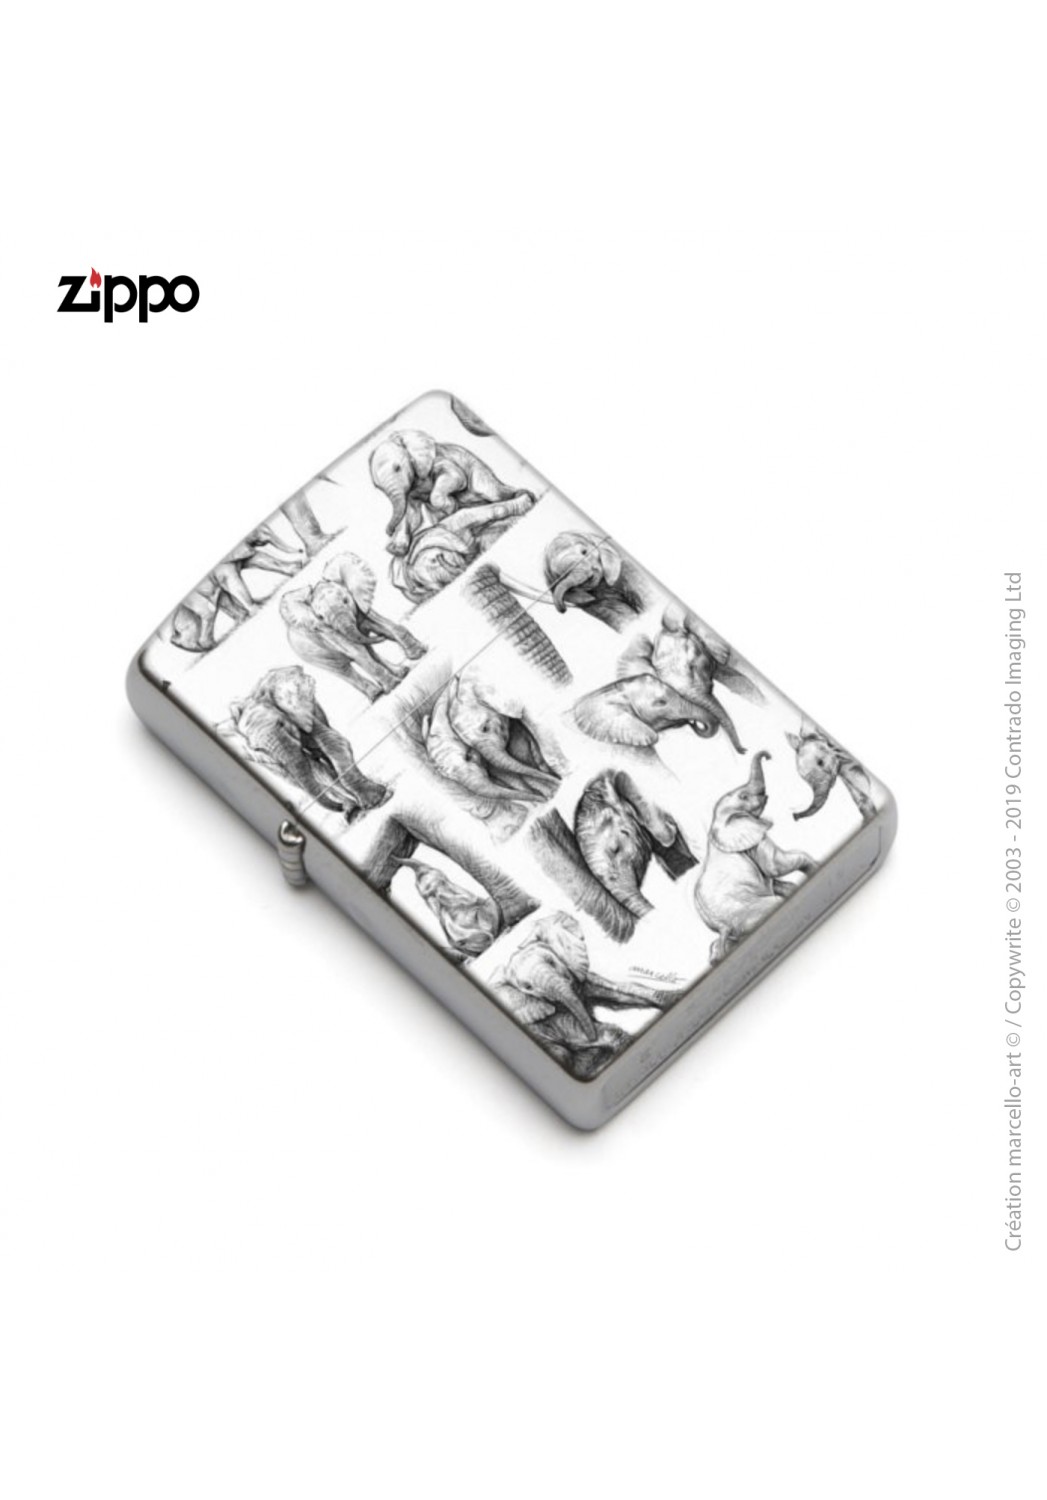 Marcello-art : Accessoires de décoration Zippo 392 éléphanteaux